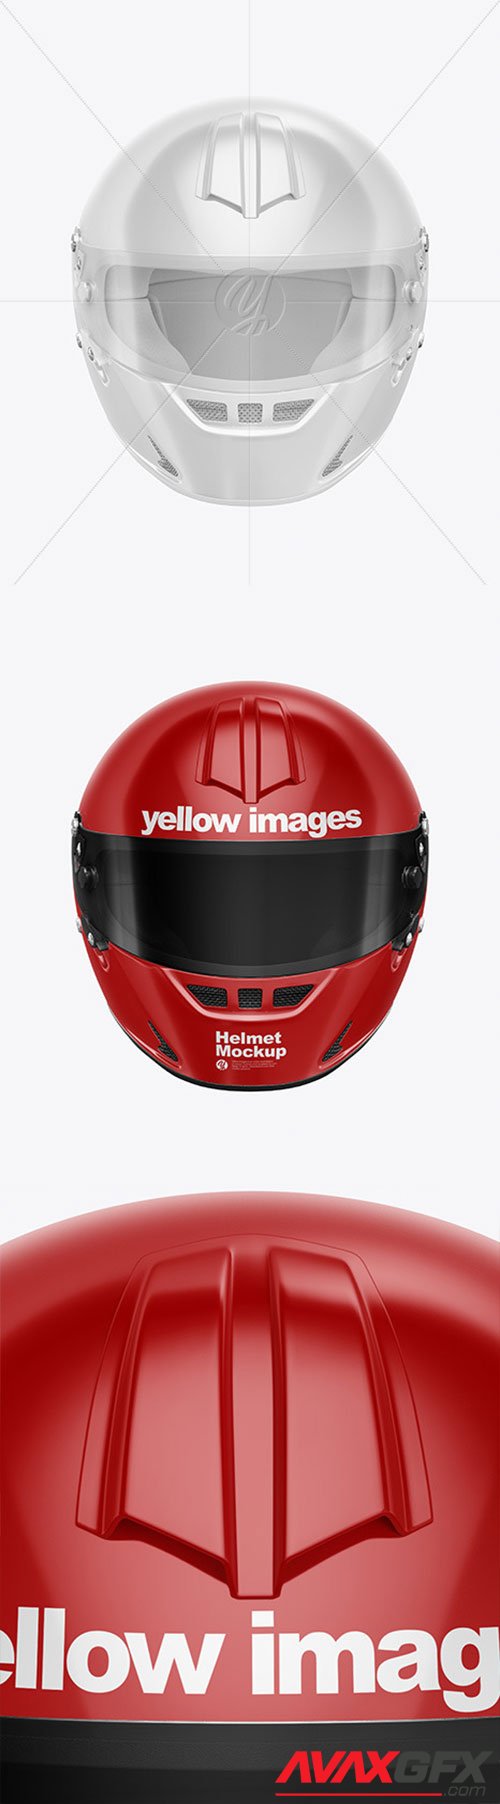 Helmet Mockup 57040